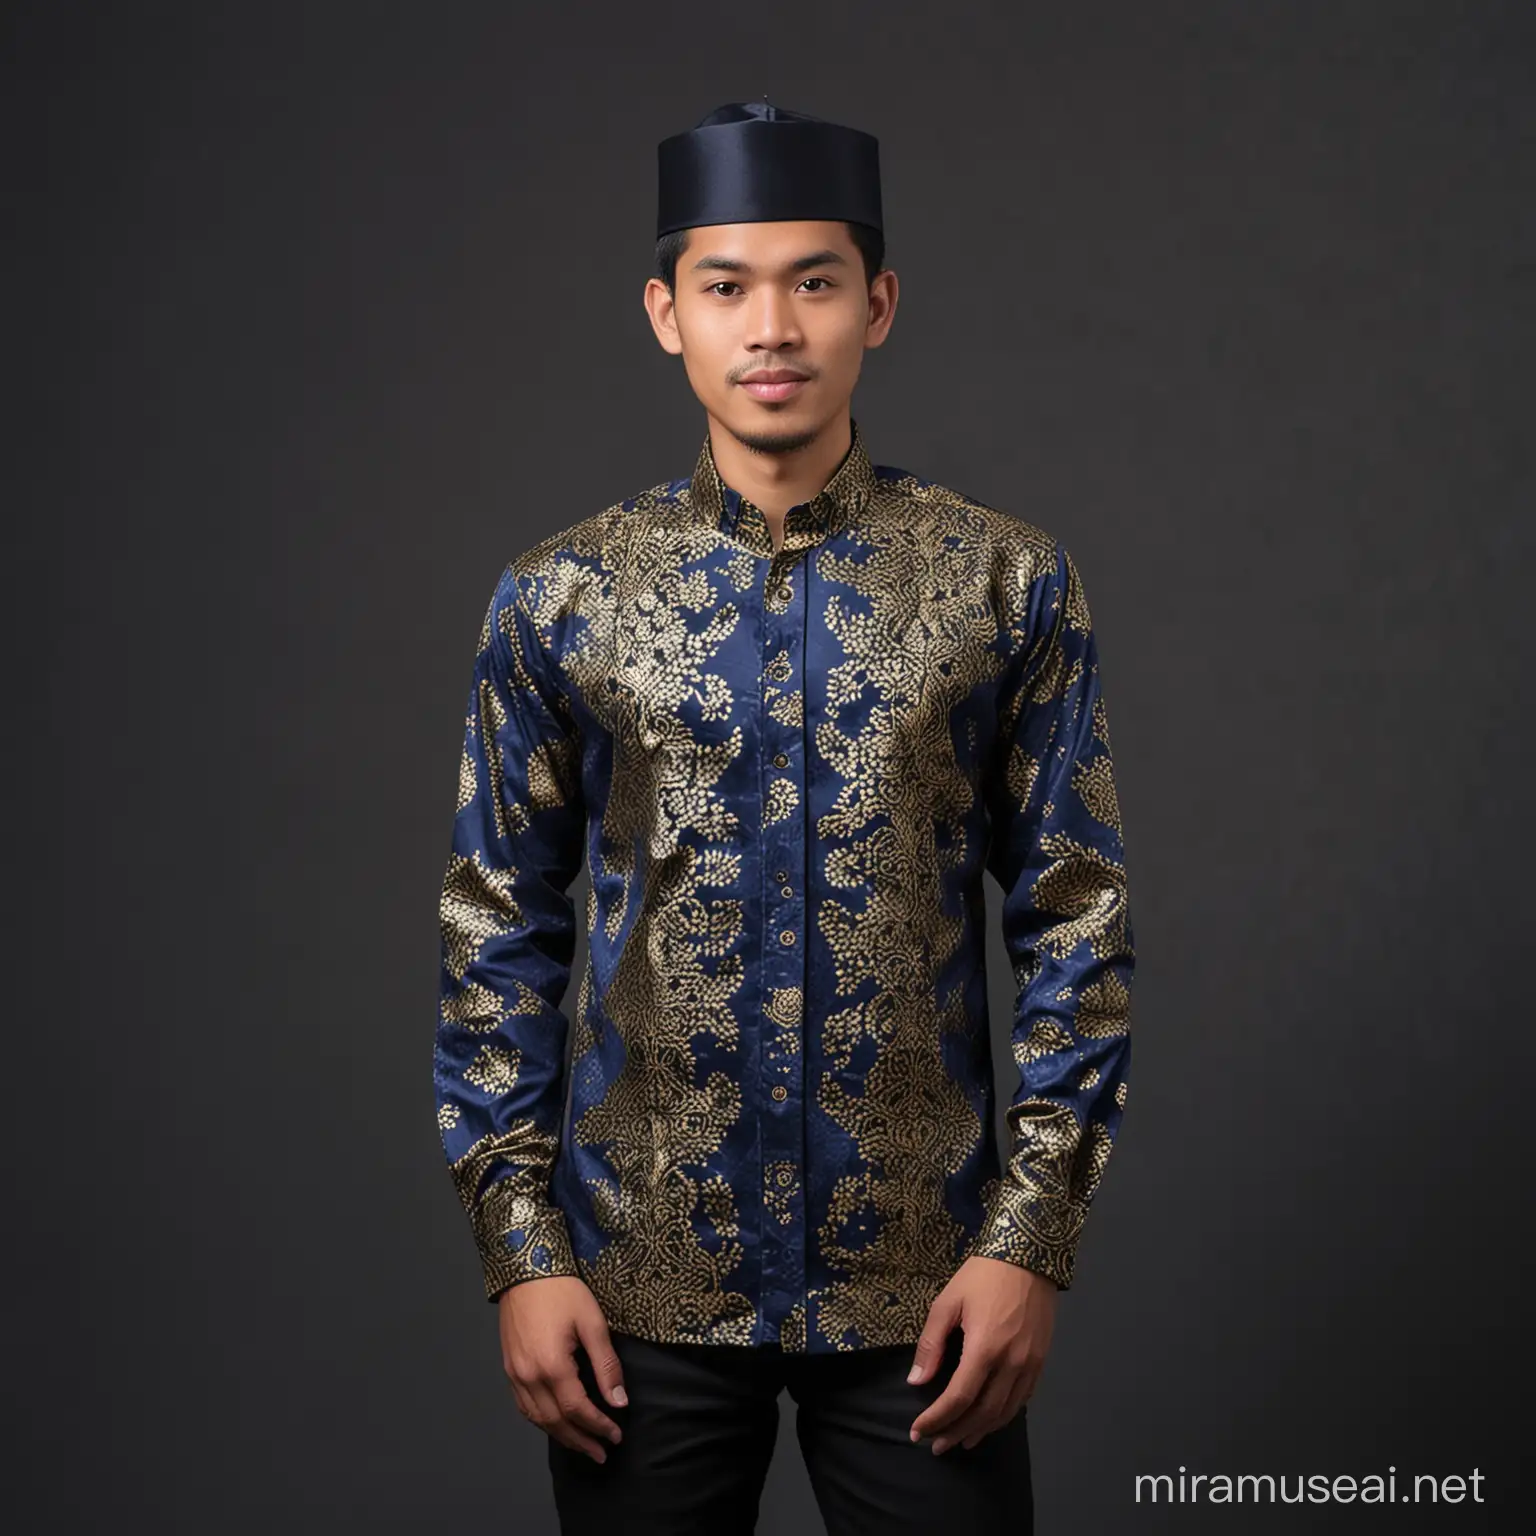 Seorang pria muda belia, wajah indonesia, memakai baju mewah biru navi batik emas,memakai songkok,busana muslim, baiground layar hitam foto studio,
Full body
